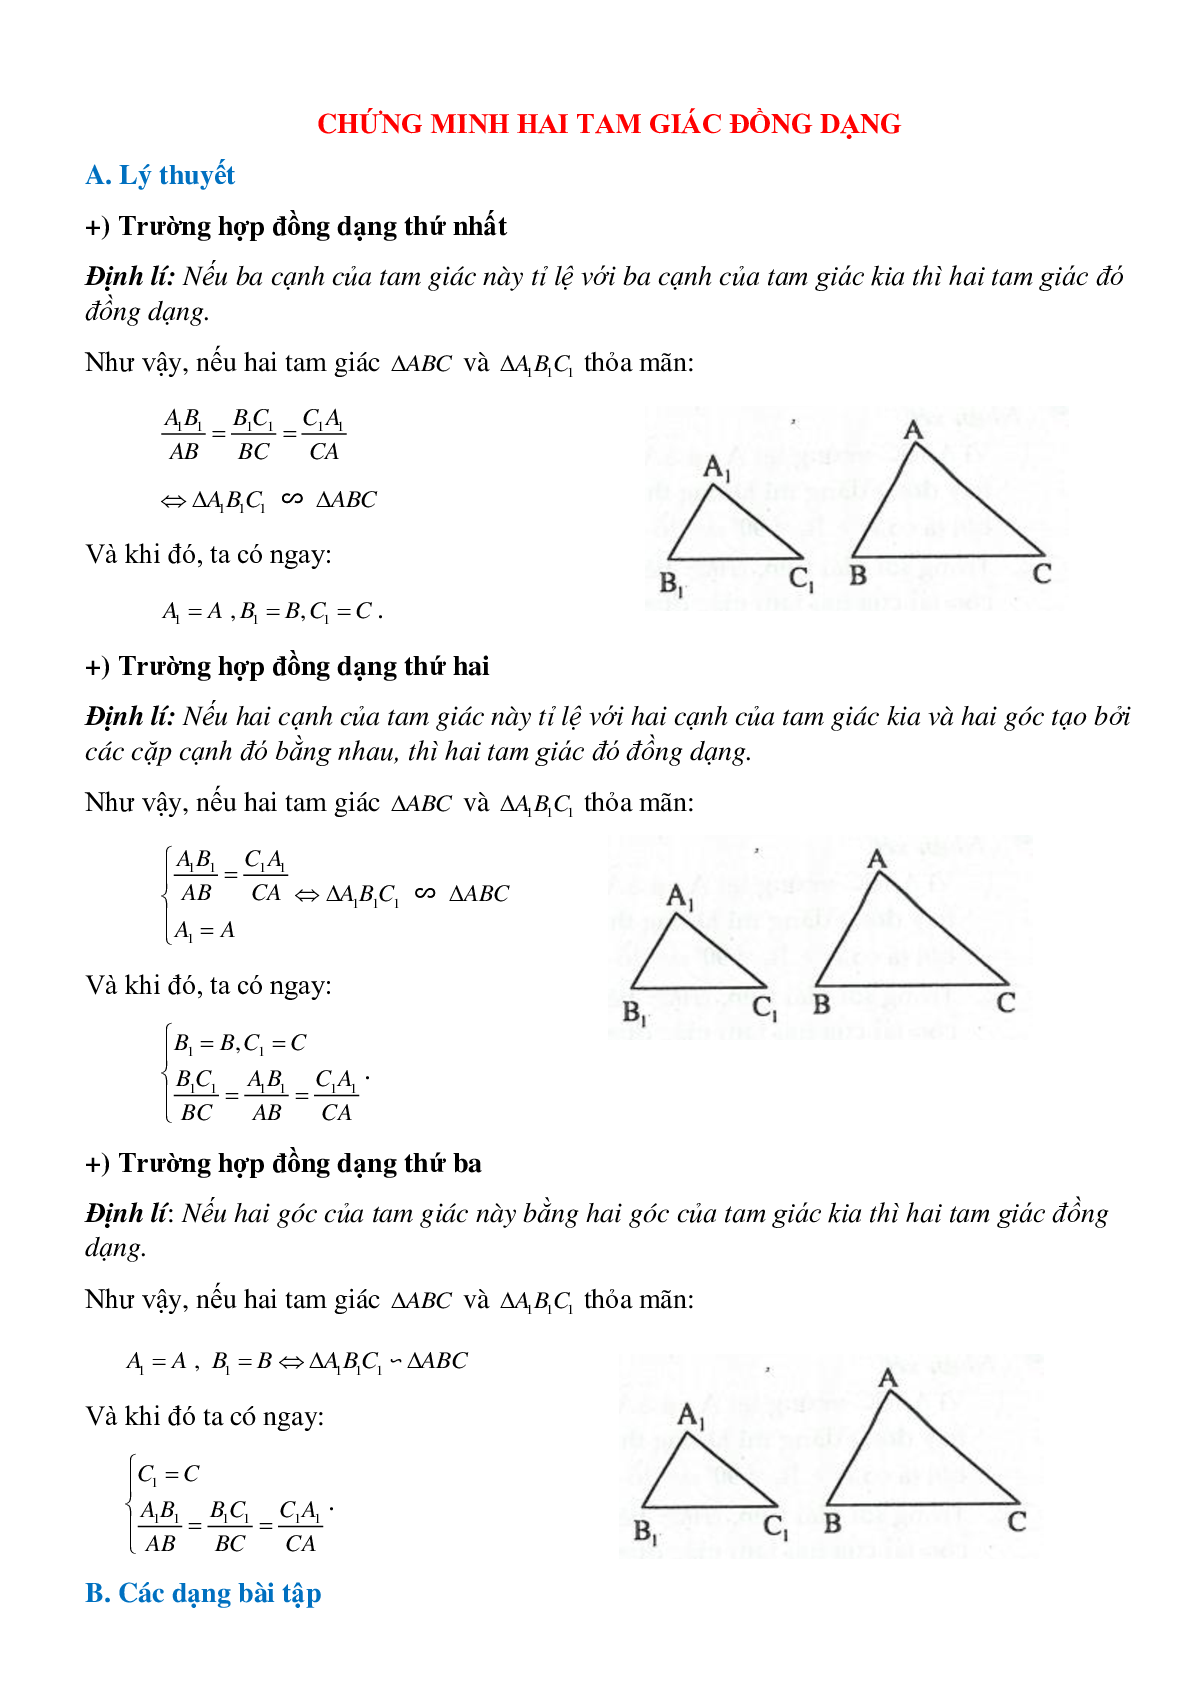 Phương pháp giải chi tiết, bài tập về Chứng minh hai tam giác đồng dạng chọn lọc (trang 1)